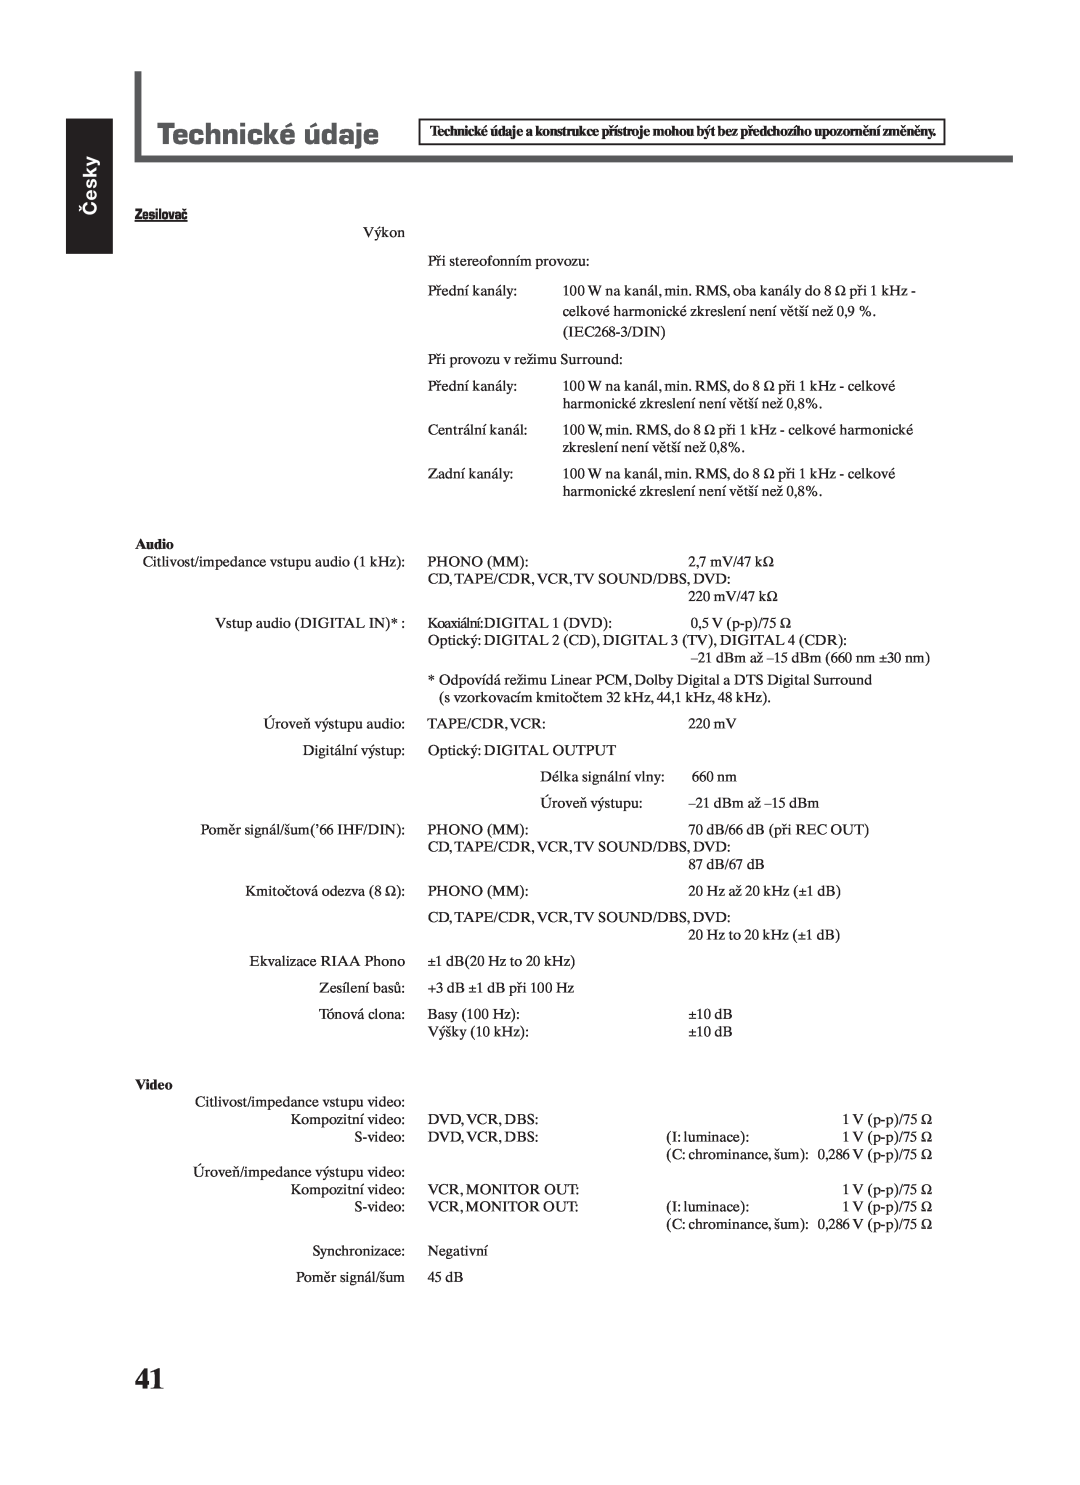 JVC RX-7022RSL manual Technické údaje, Česky, Zesilovač, Audio, Video 